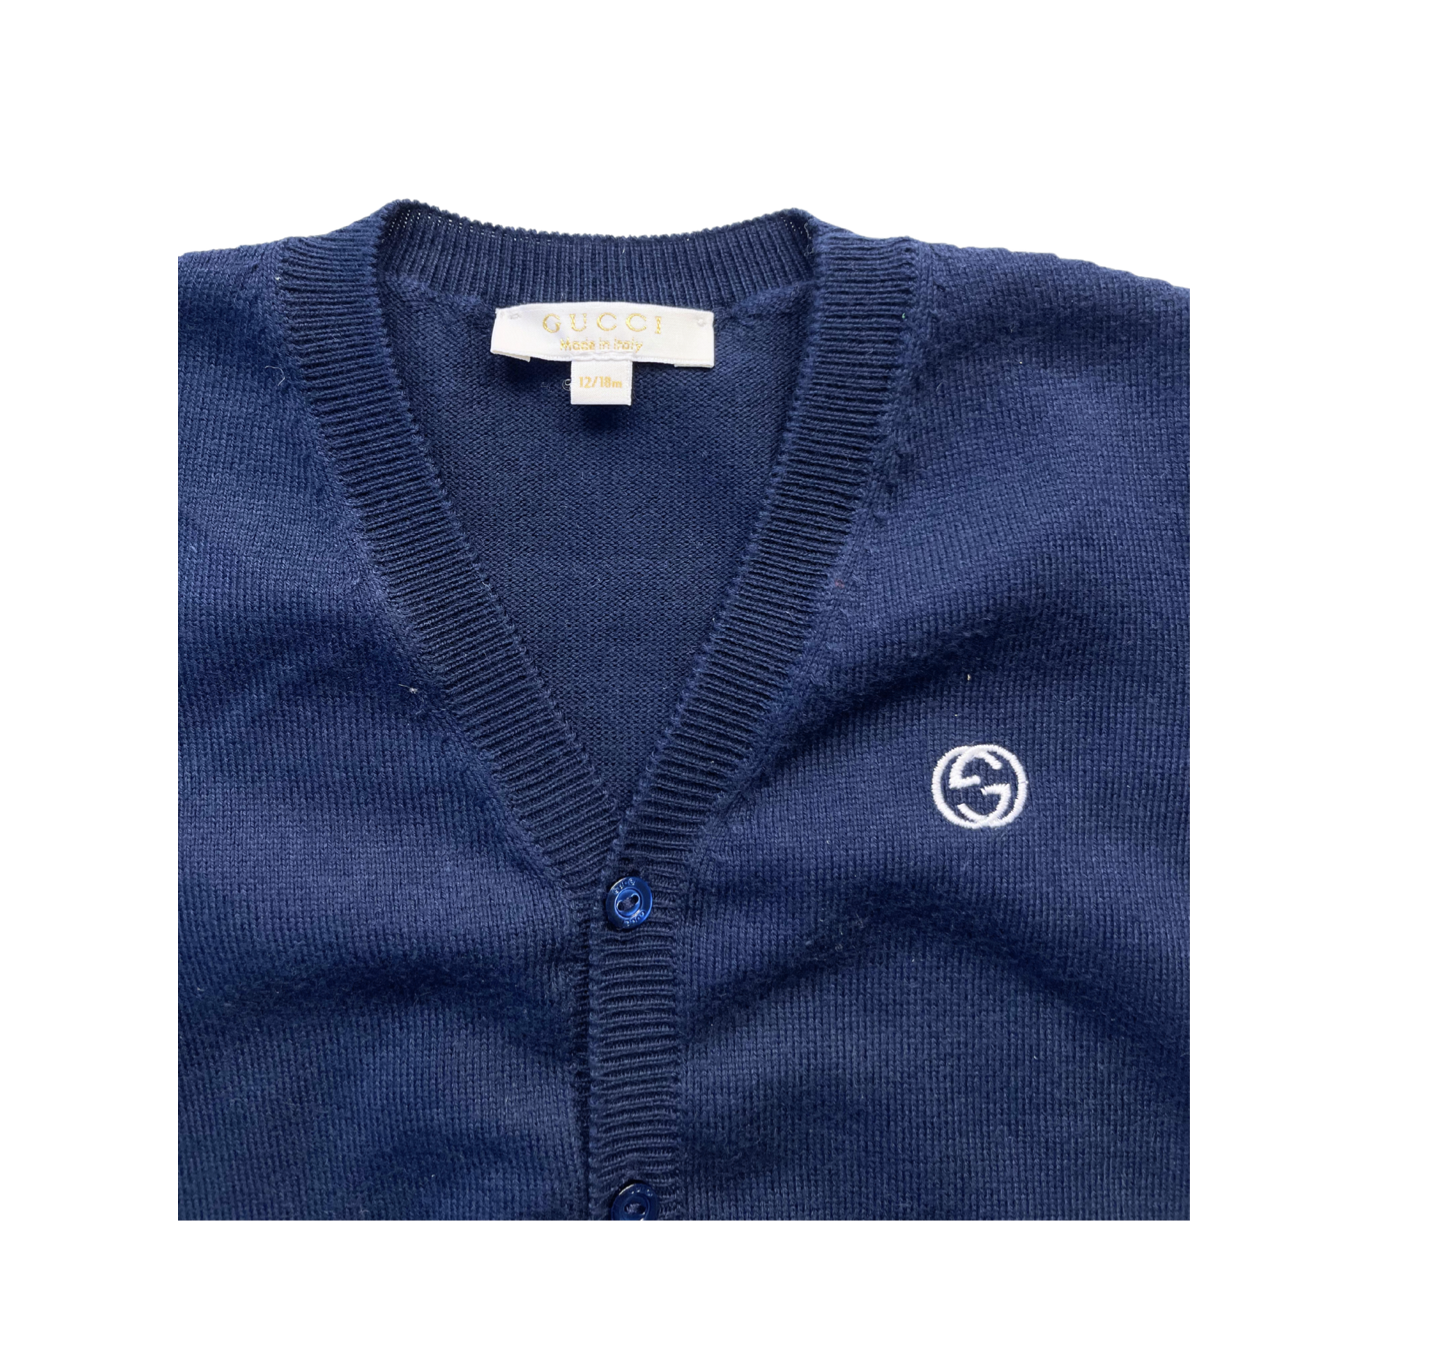 GUCCI - Cardigan bleu marine en coton - 12/18 mois